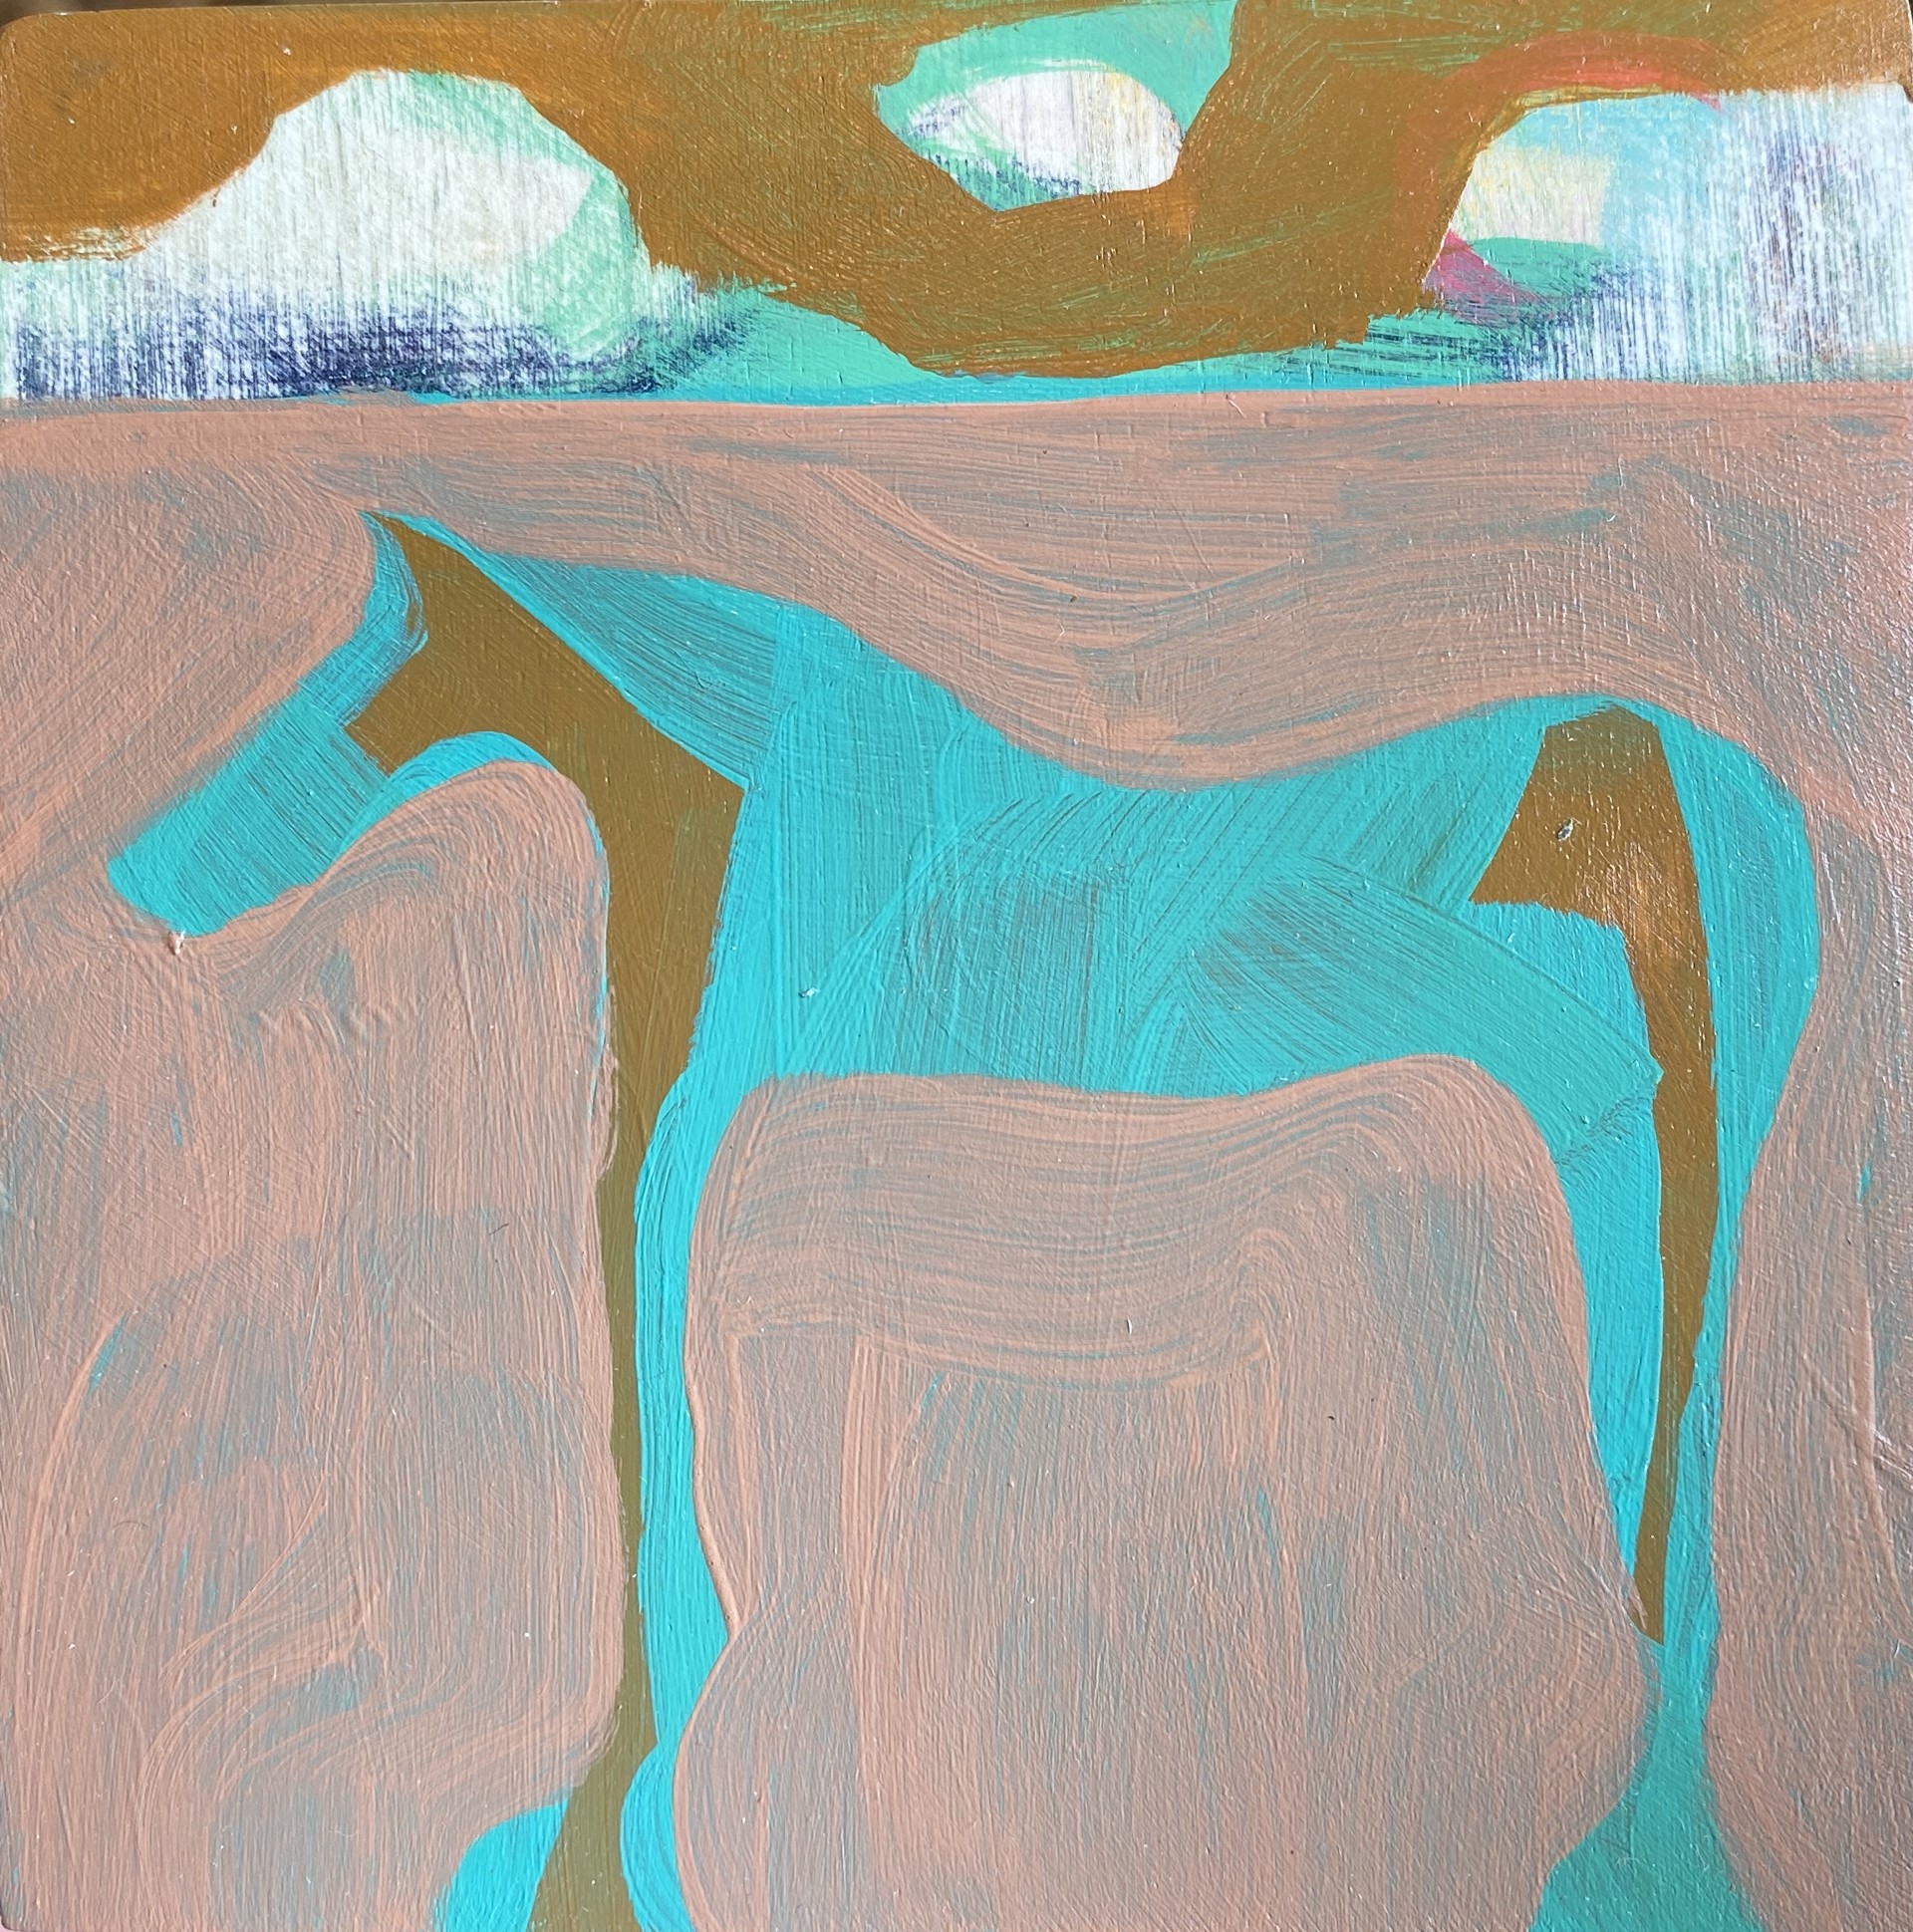 Teal Horse in Pink Field by Rachael Van Dyke